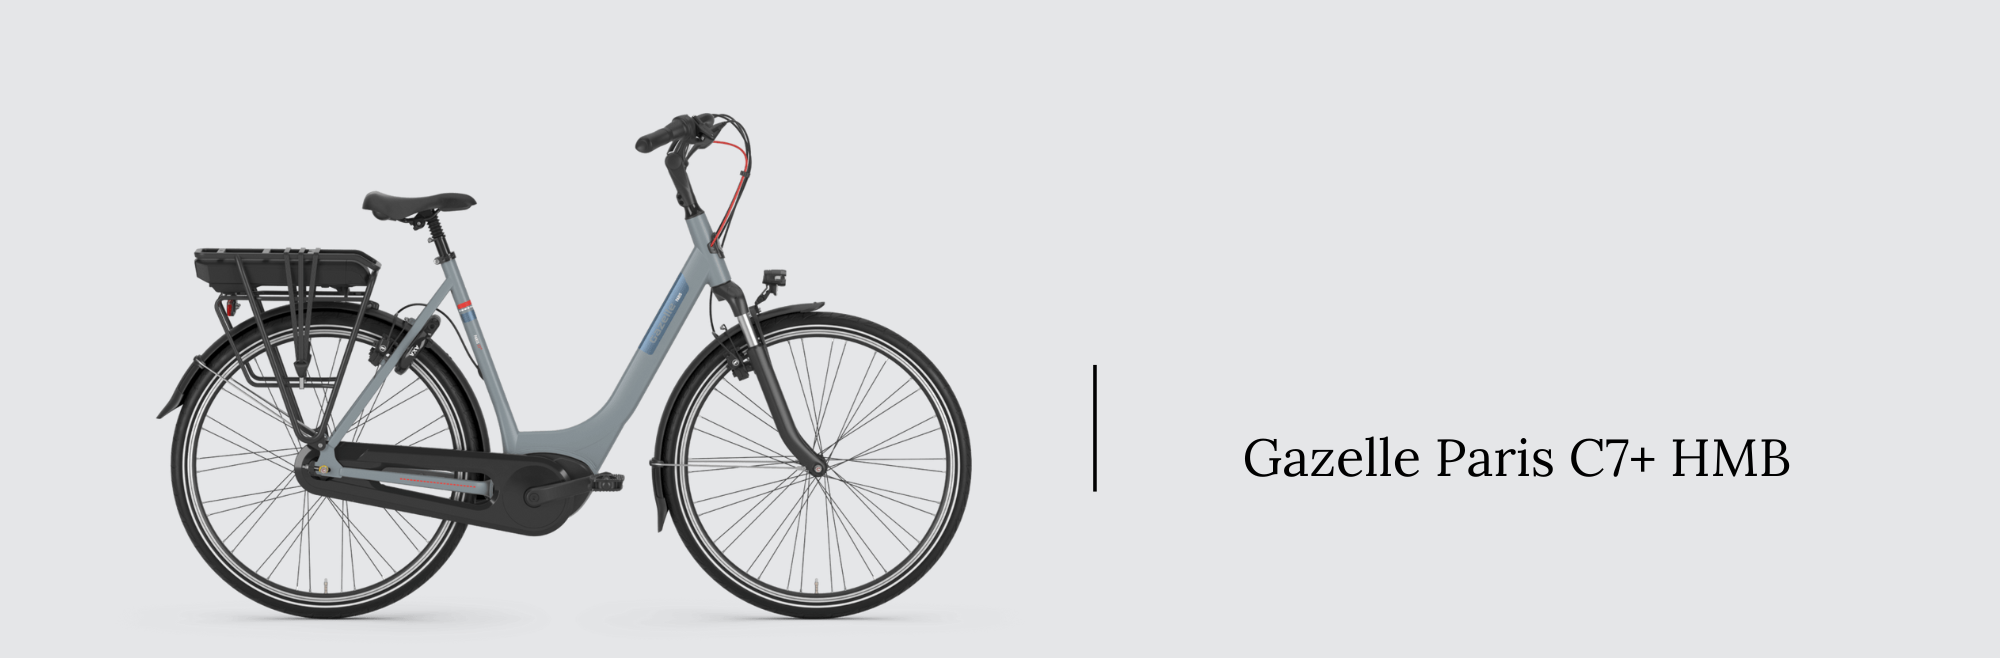 gazelle paris c7+ hmb bosch active line plus electric bike